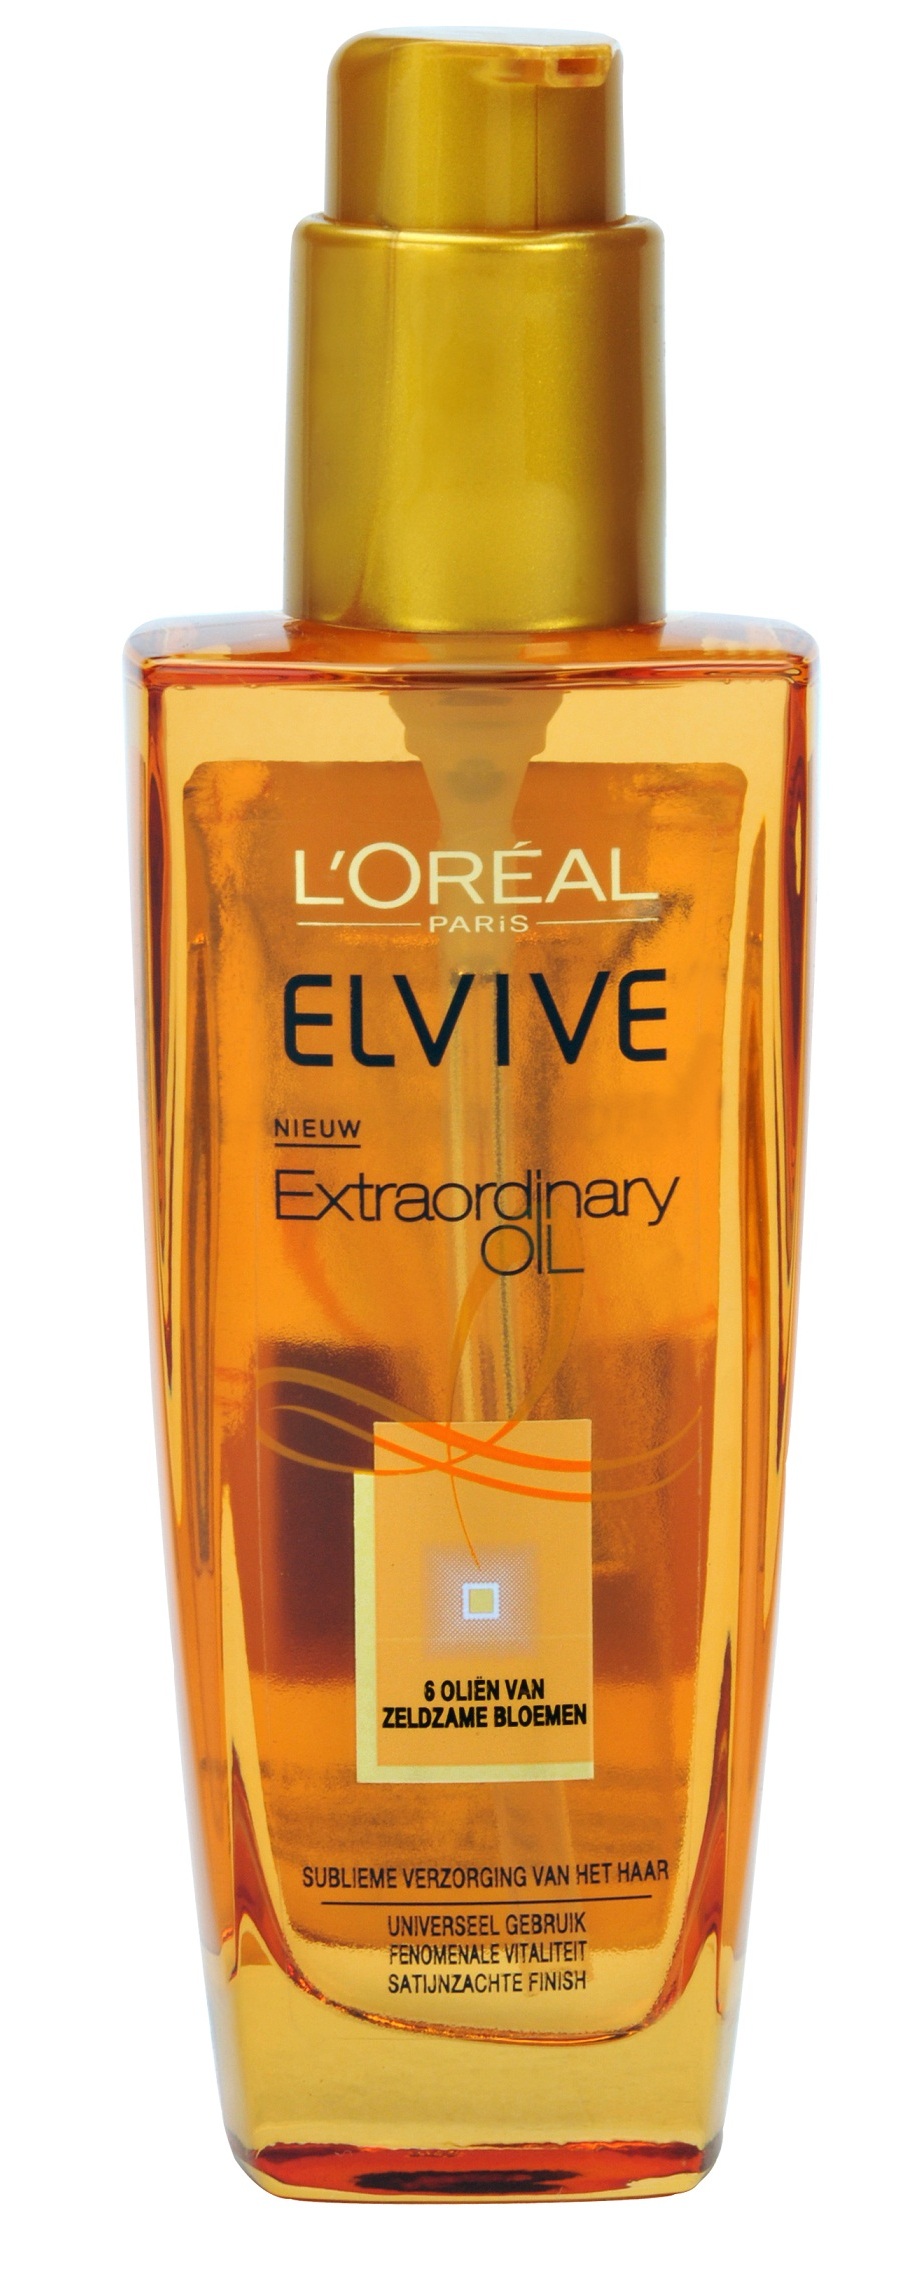 L oreal экстраординарное масло. Лореаль Эльсев масло экстраординарное. L'Oreal Paris Elseve Extraordinary Oil. Осветляющее масло для волос лореаль. Масло лореаль для светлых волос.